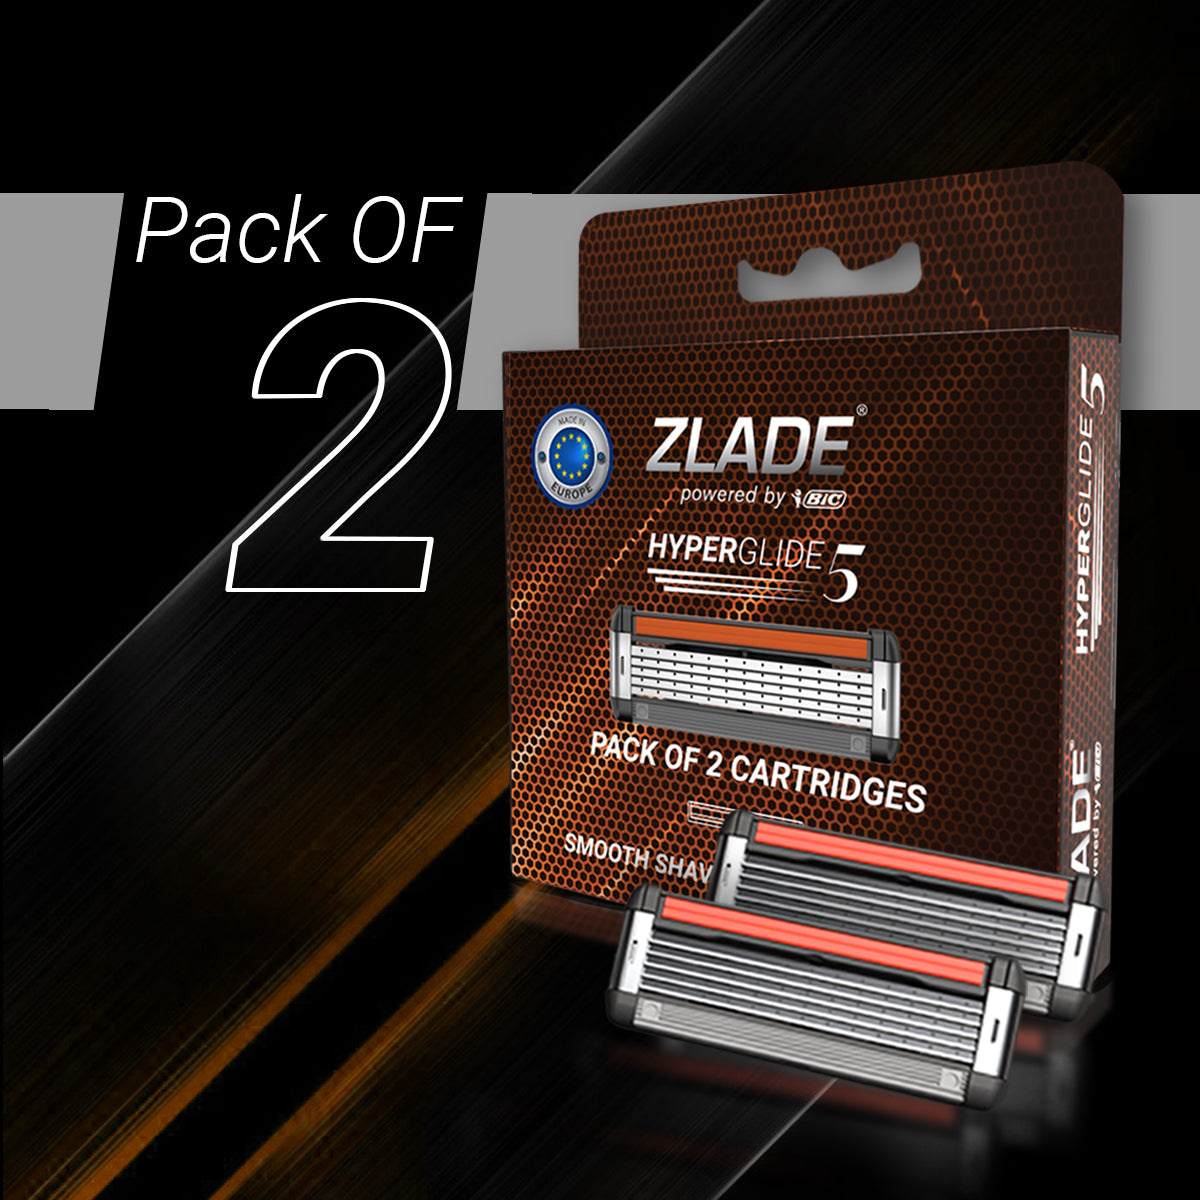 Zlade HyperGlide5 Men's Razor Cartridges